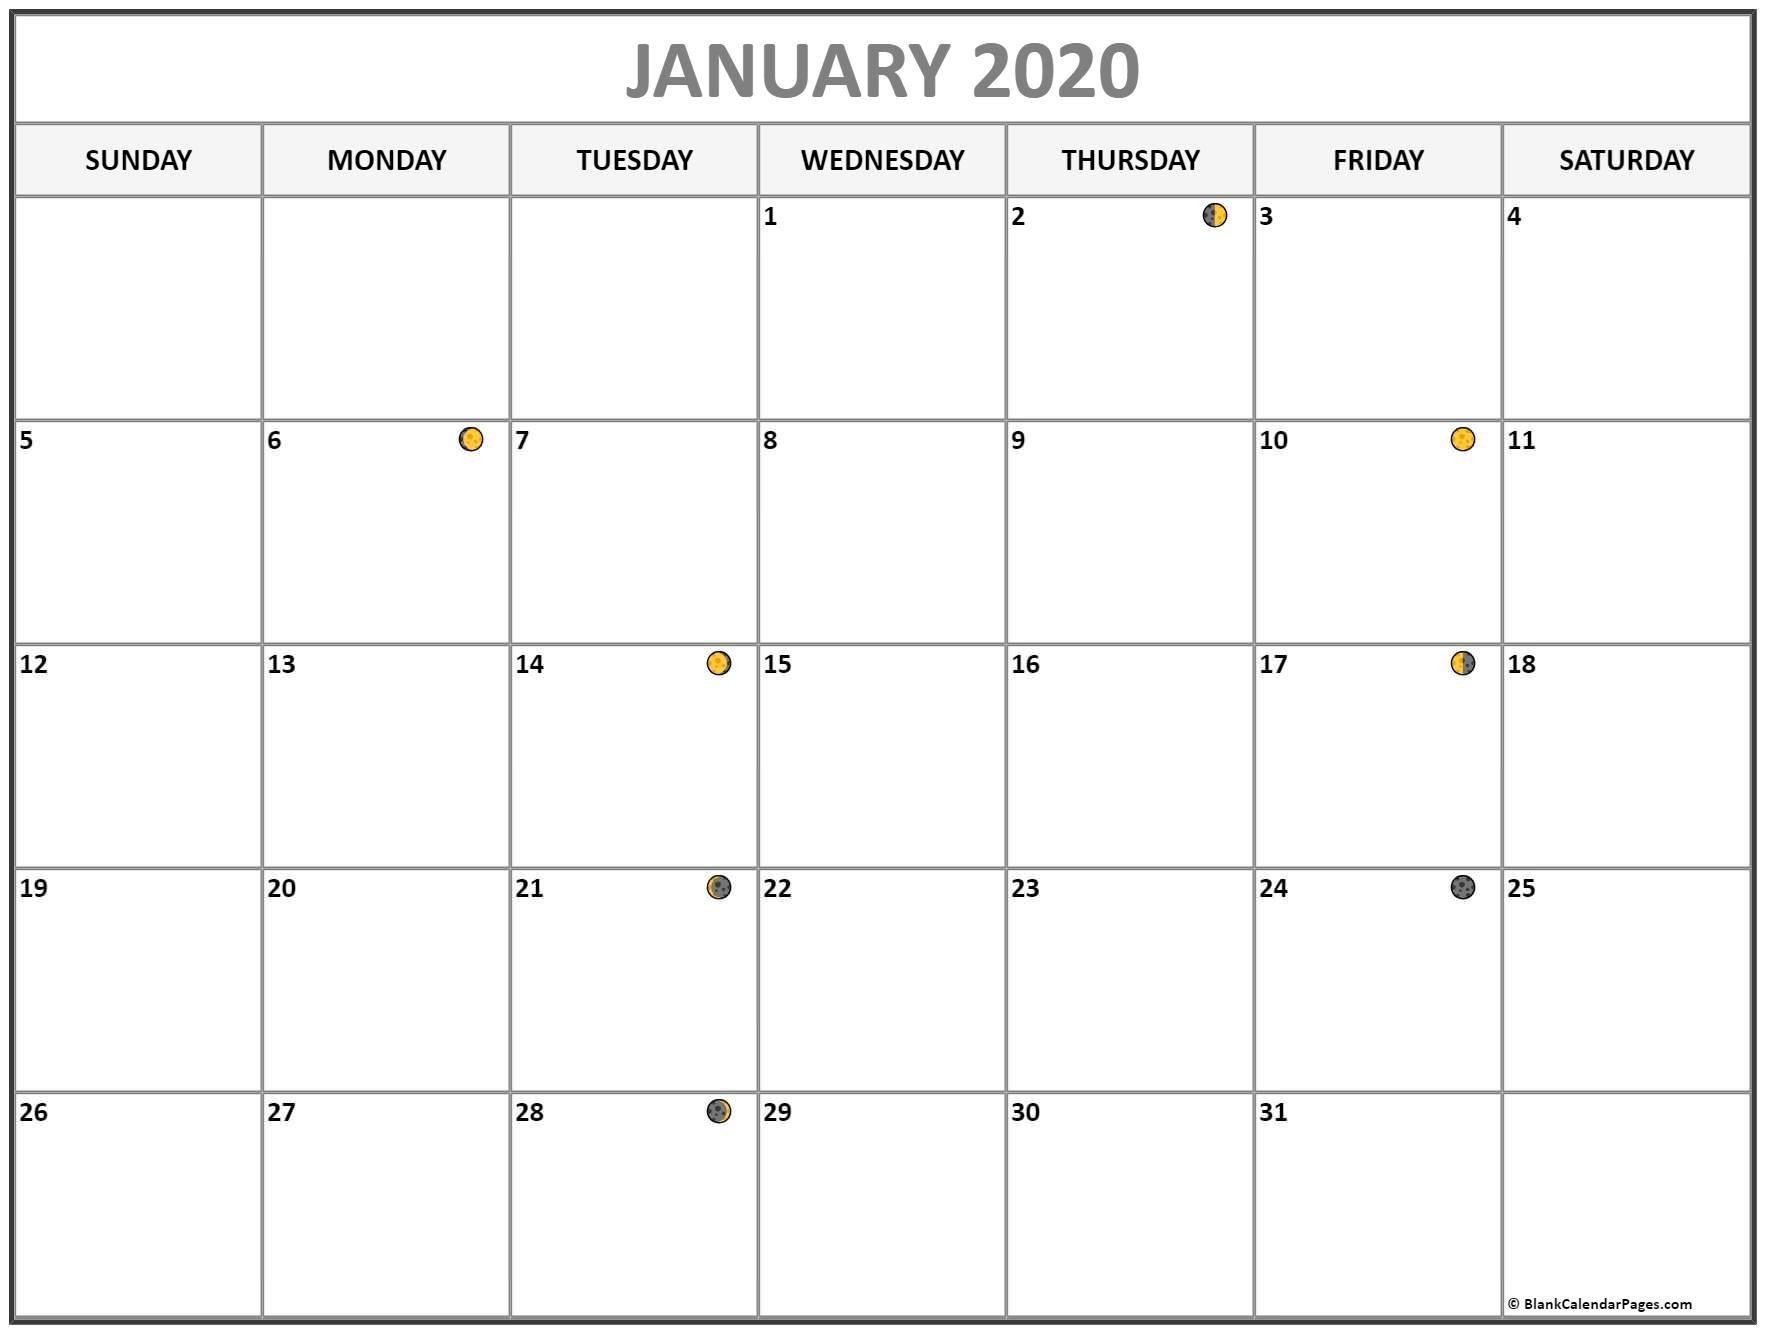 January 2020 Lunar Calendar | Moon Phase Calendar-January 2020 Calendar Full Moon